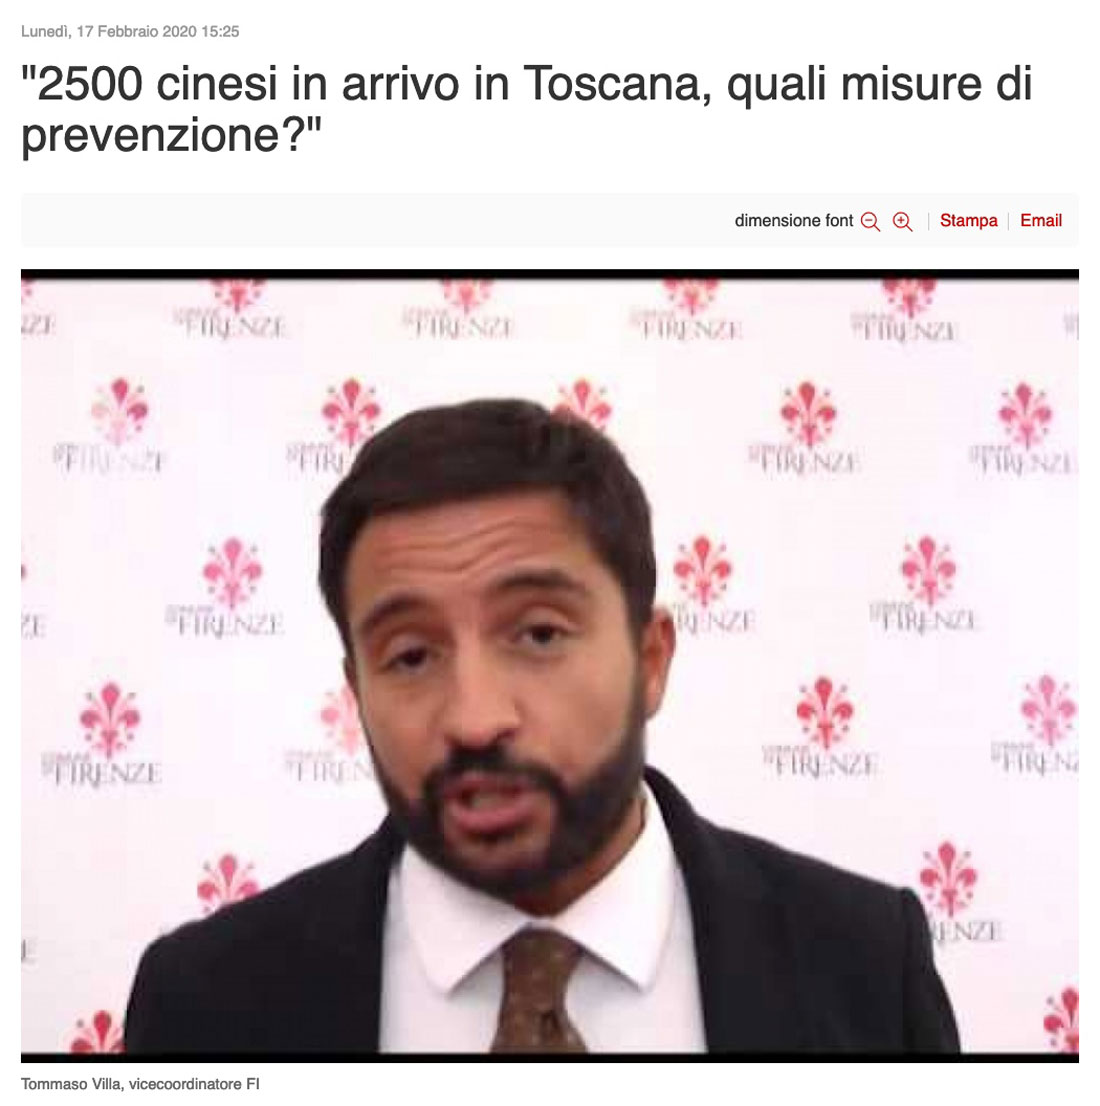 2500 cinesi in arrivo in Toscana, quali misure di prevenzione?